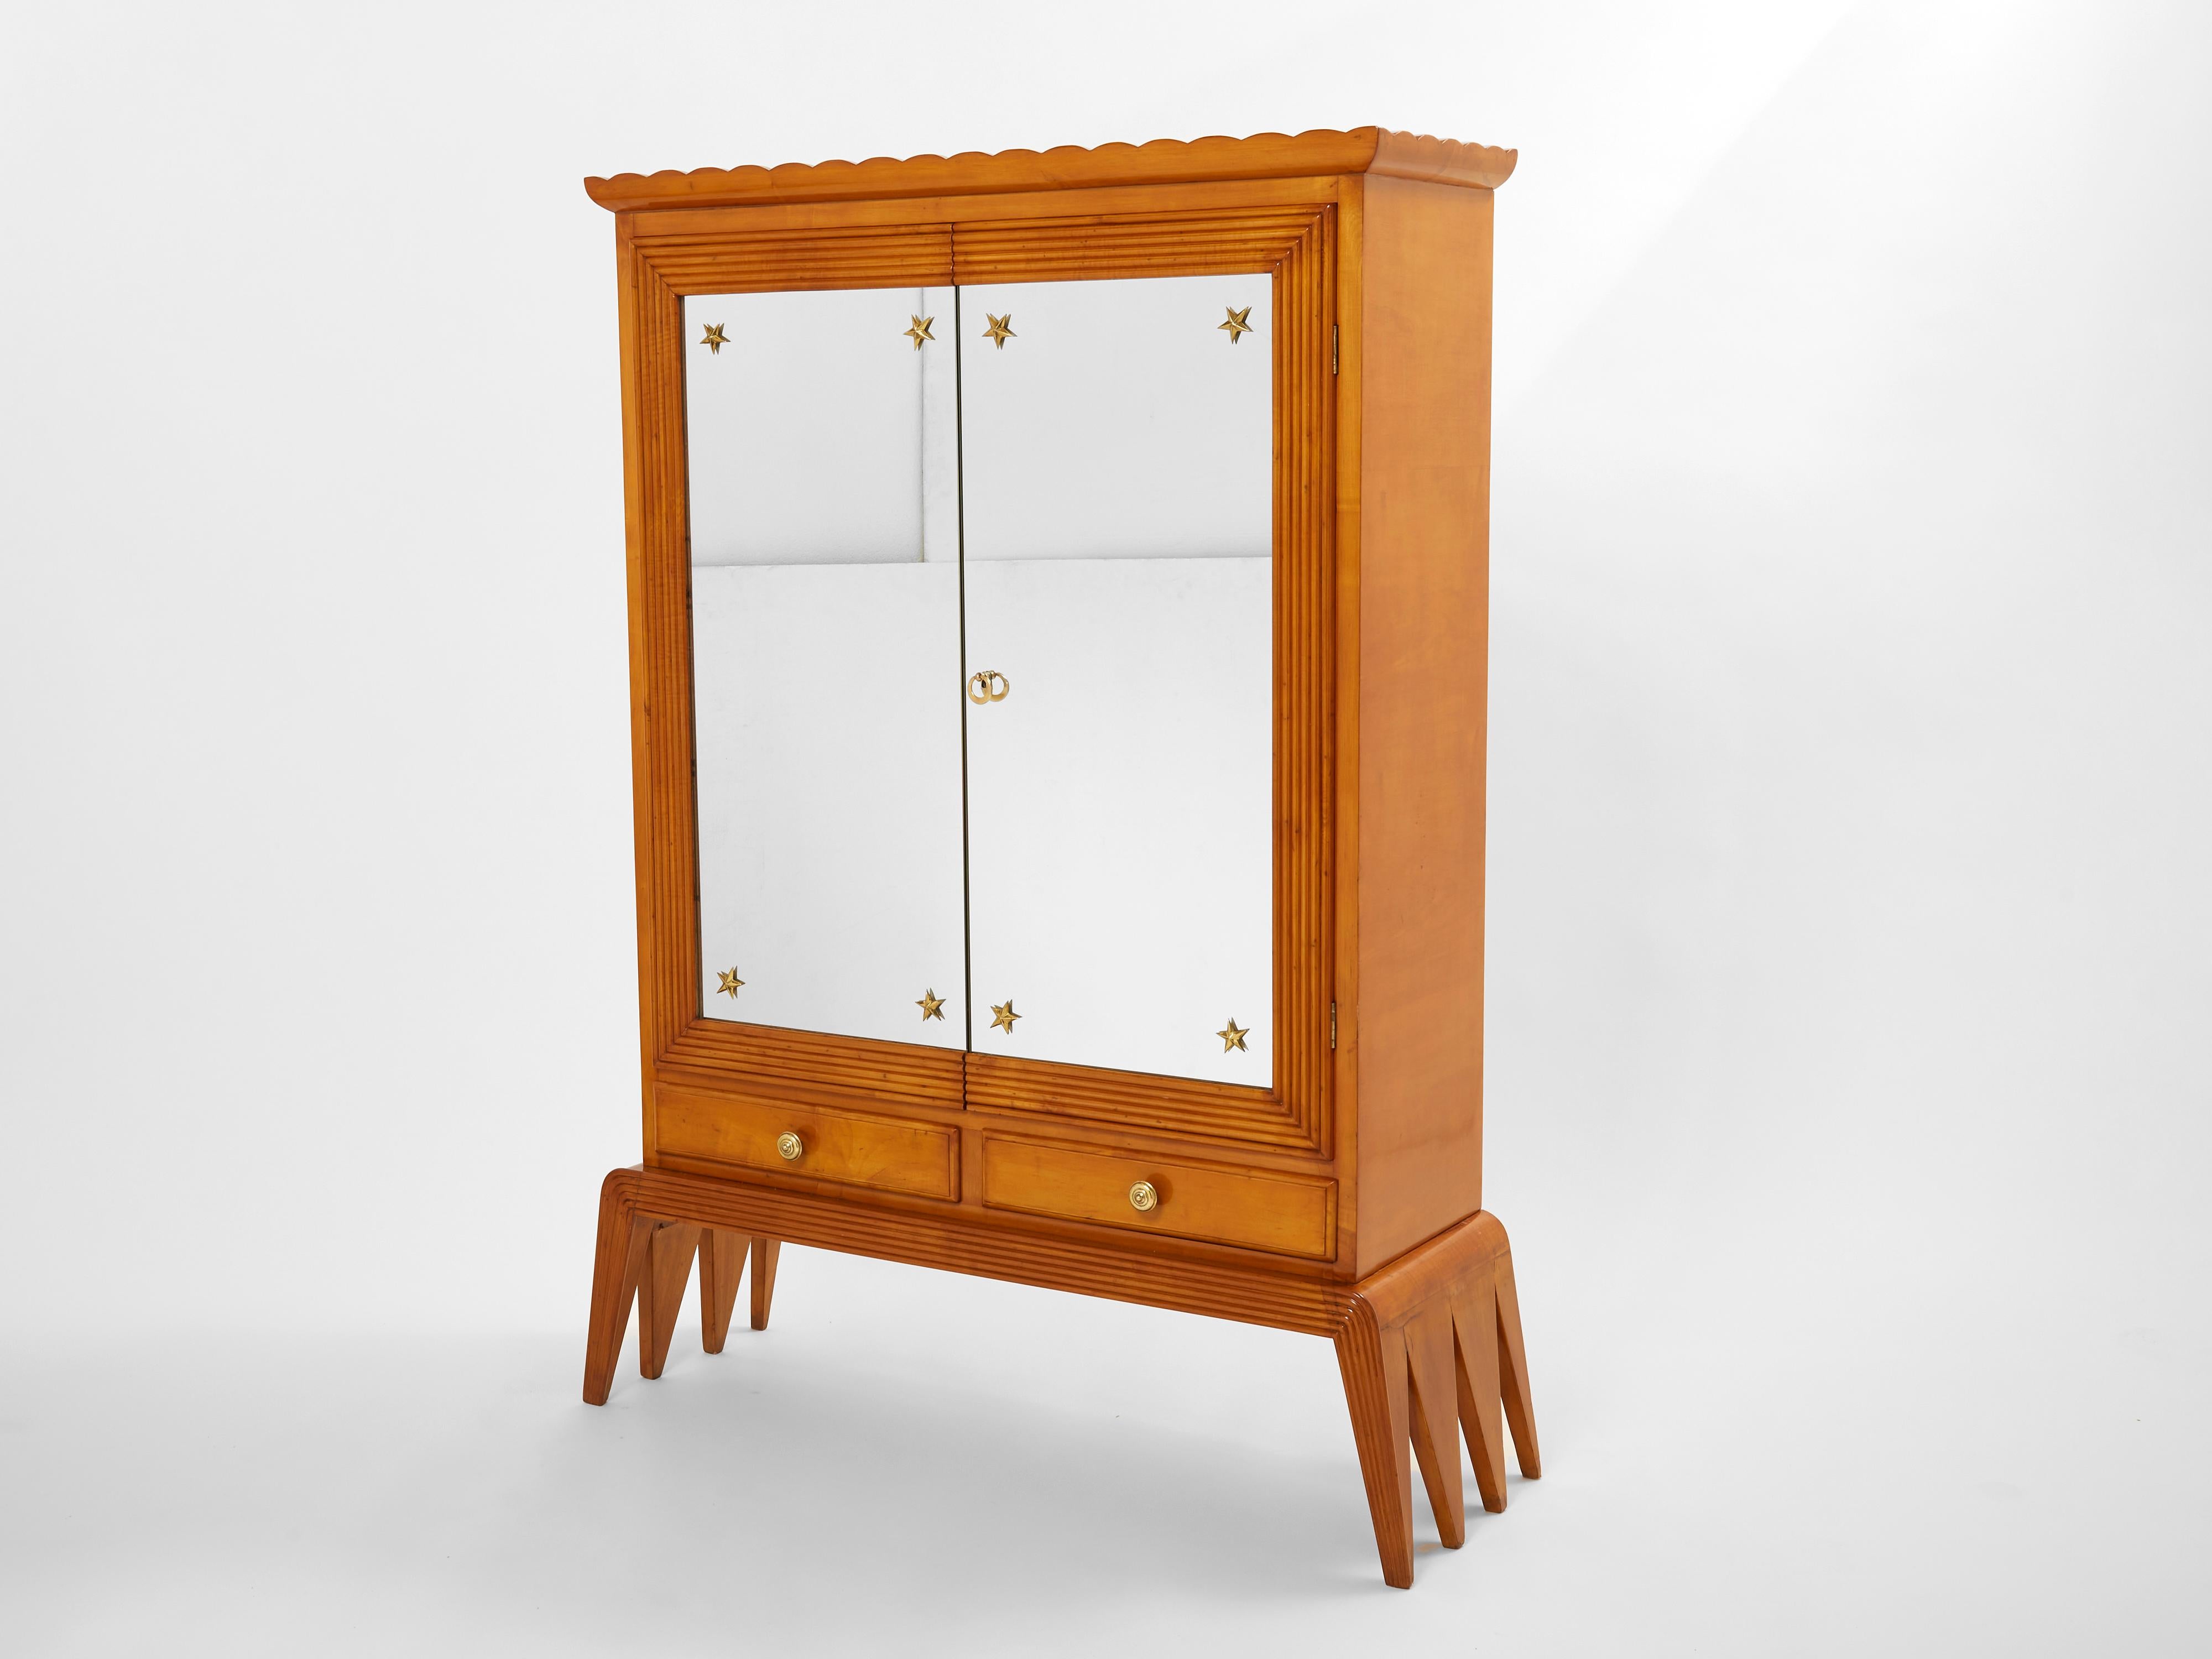 Un rare meuble de bar Osvaldo Borsani (bar mobile) produit par Arredamenti Borsani Varedo à Milan au milieu des années 1940. Elle présente un corps en bois de cerisier avec des lignes de relief incisées encadrant deux portes en miroir avec des